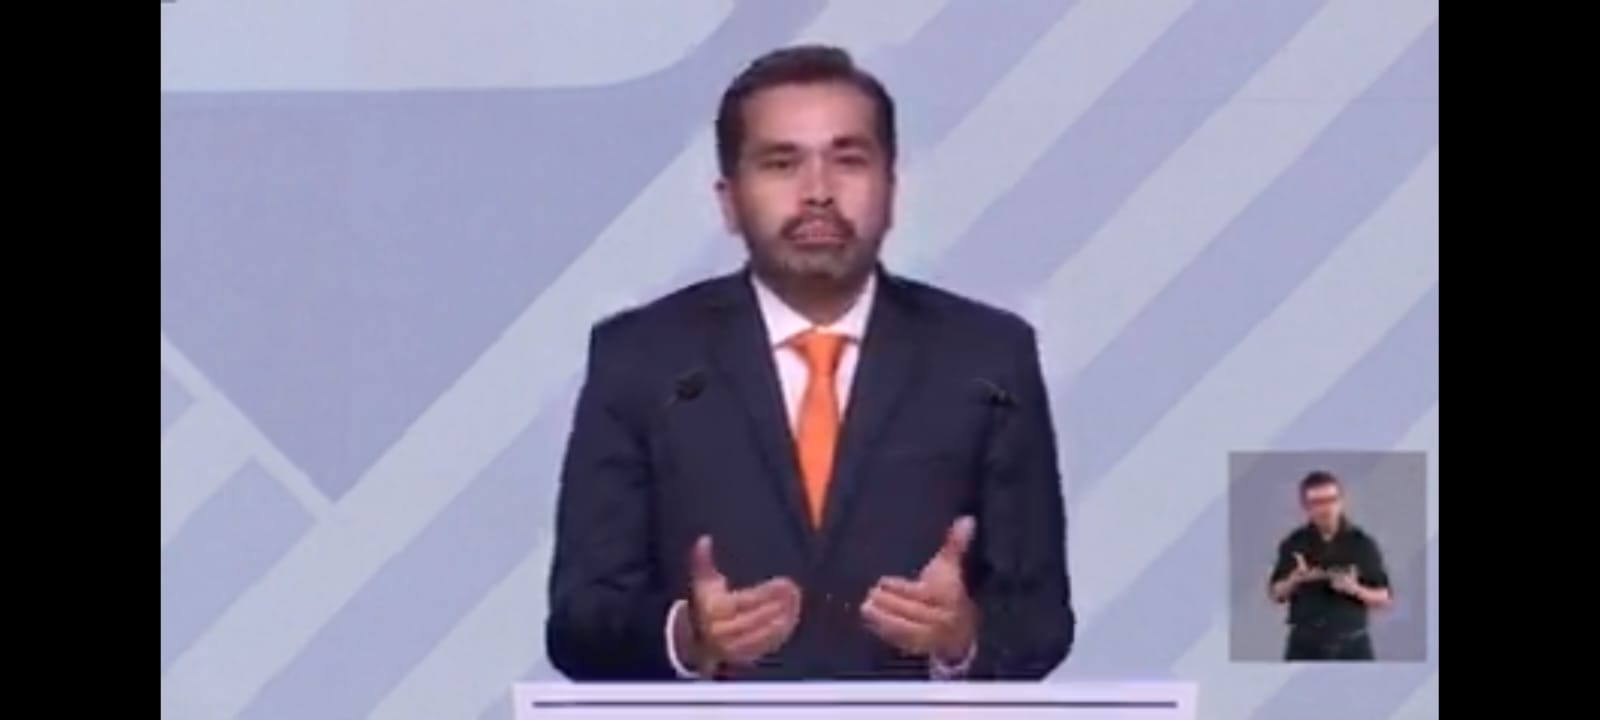 Jorge Álvarez Máynez, candidato de Movimiento Ciudadano a la Presidencia de la República, en el último debate